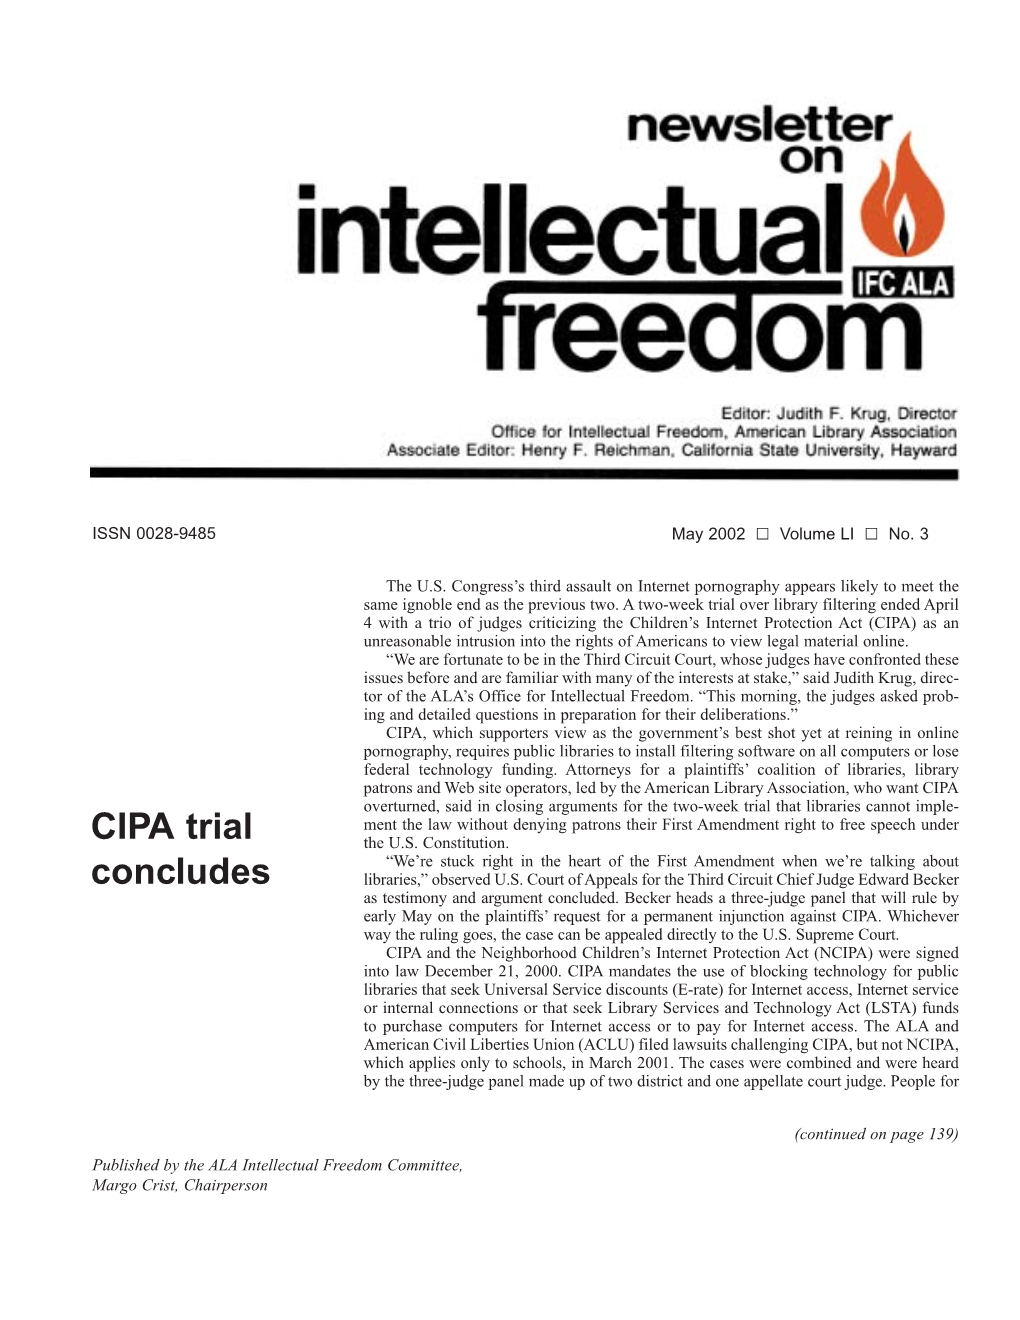 CIPA Trial Concludes